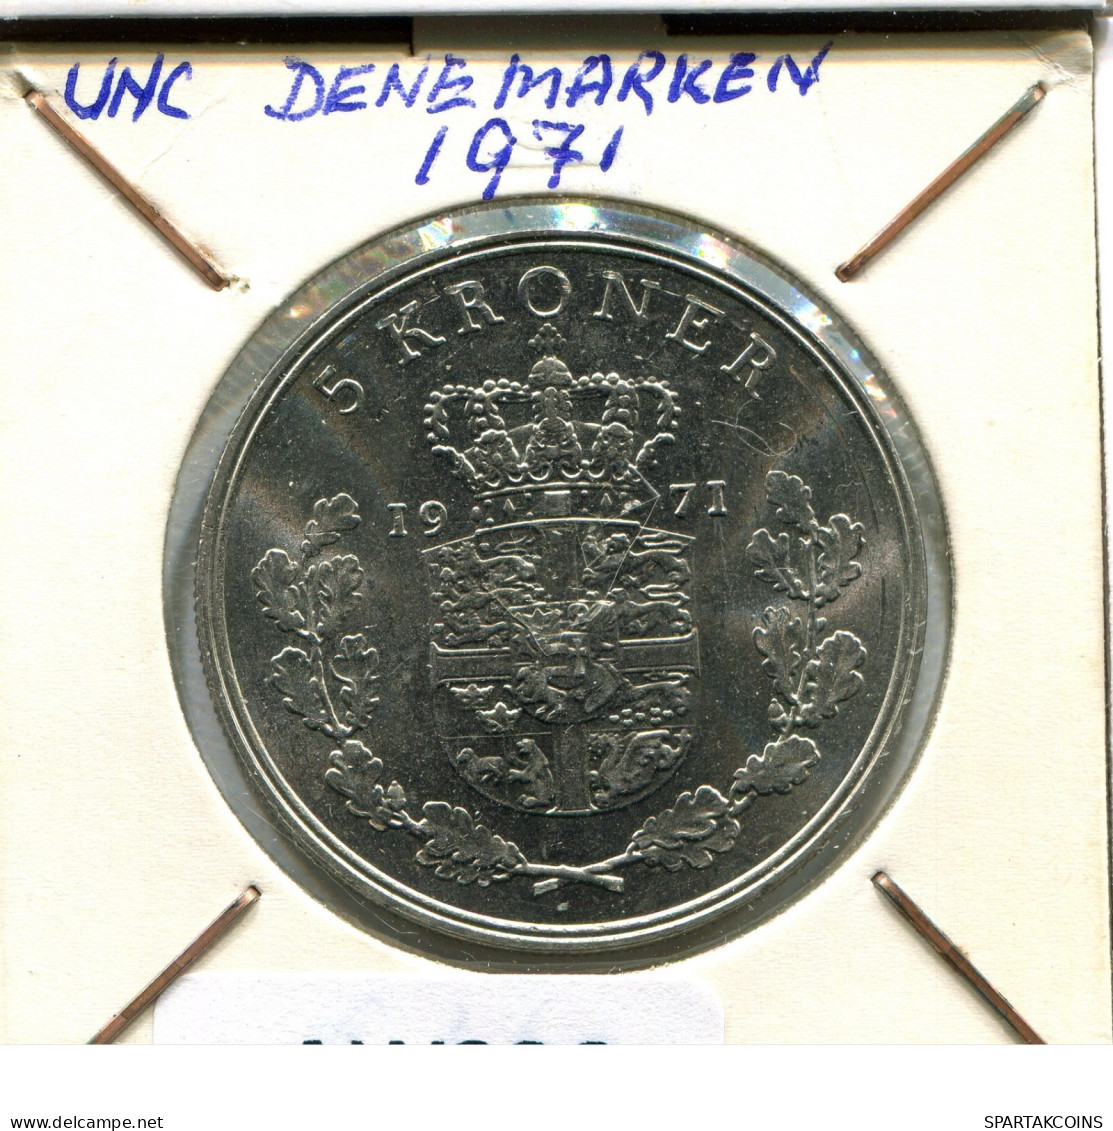 5 KRONER 1971 DANEMARK DENMARK Münze #AW326.D.A - Dinamarca